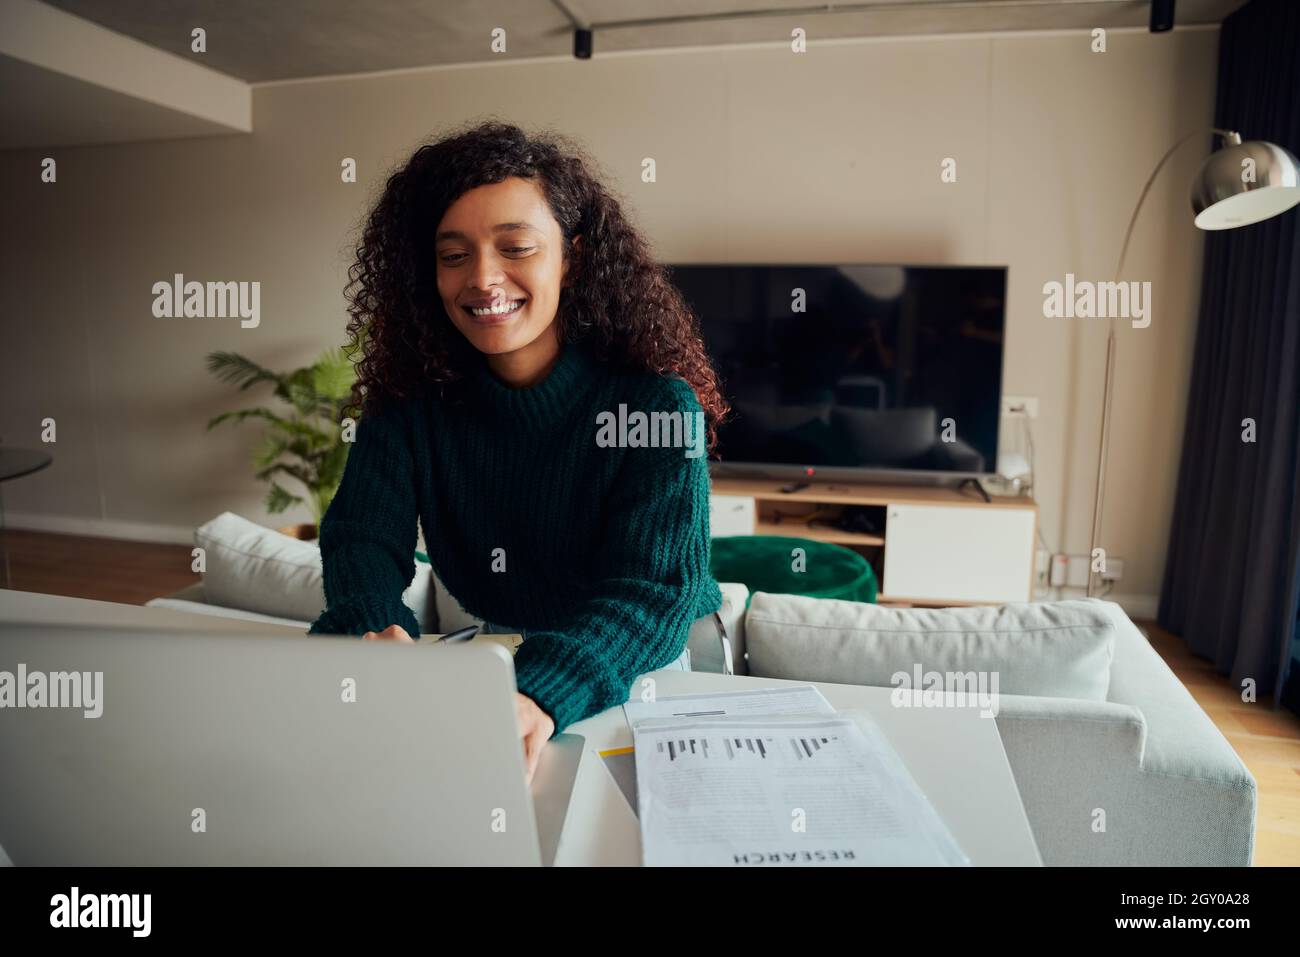 Femme de race mixte adulte souriant tout en travaillant sur un ordinateur portable assis au comptoir de la cuisine Banque D'Images